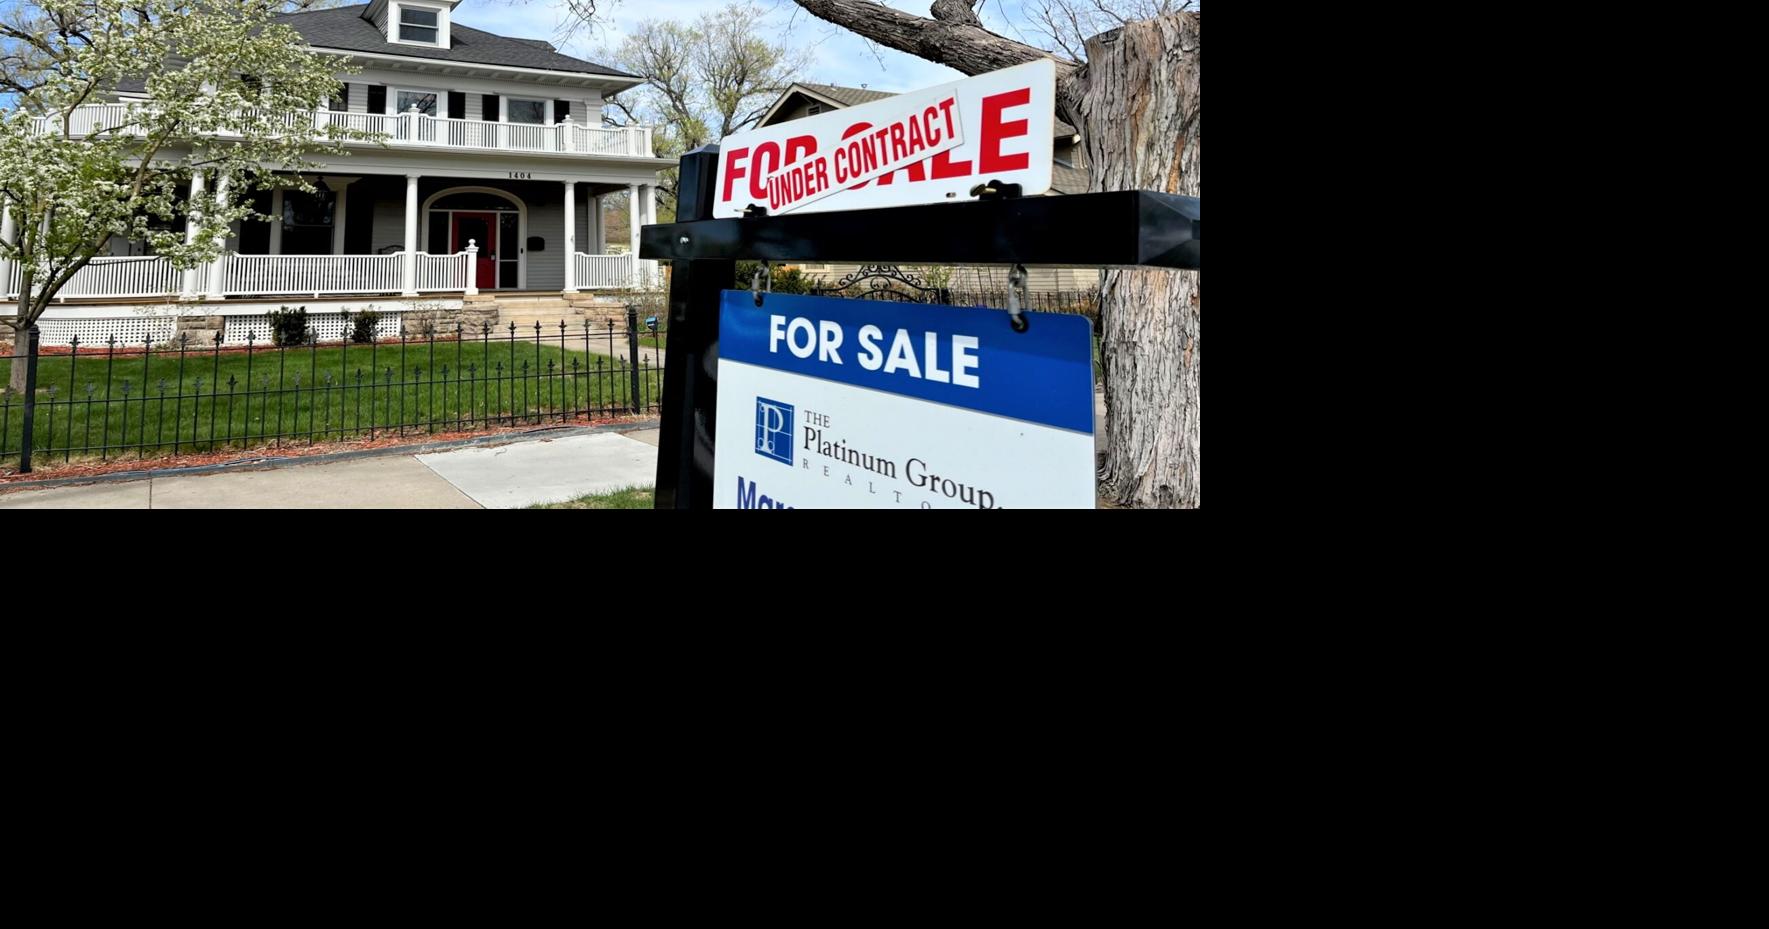 Colorado Springs home sales slump again in March, report shows